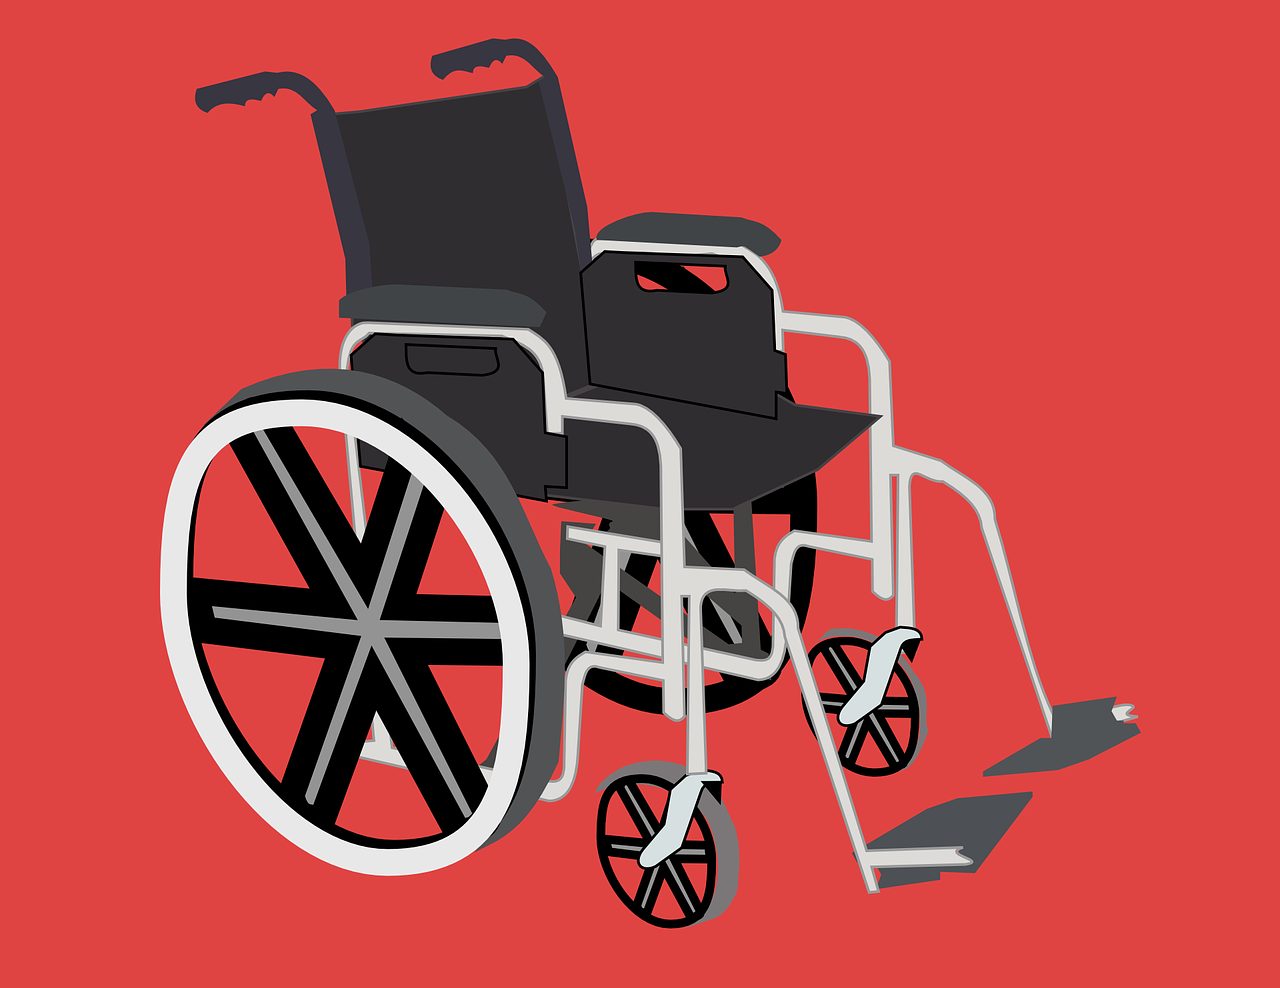 Kop van Zuid LocatieKop van instelling gehandicaptenzorg verstandelijk gehandicapten beoordeling